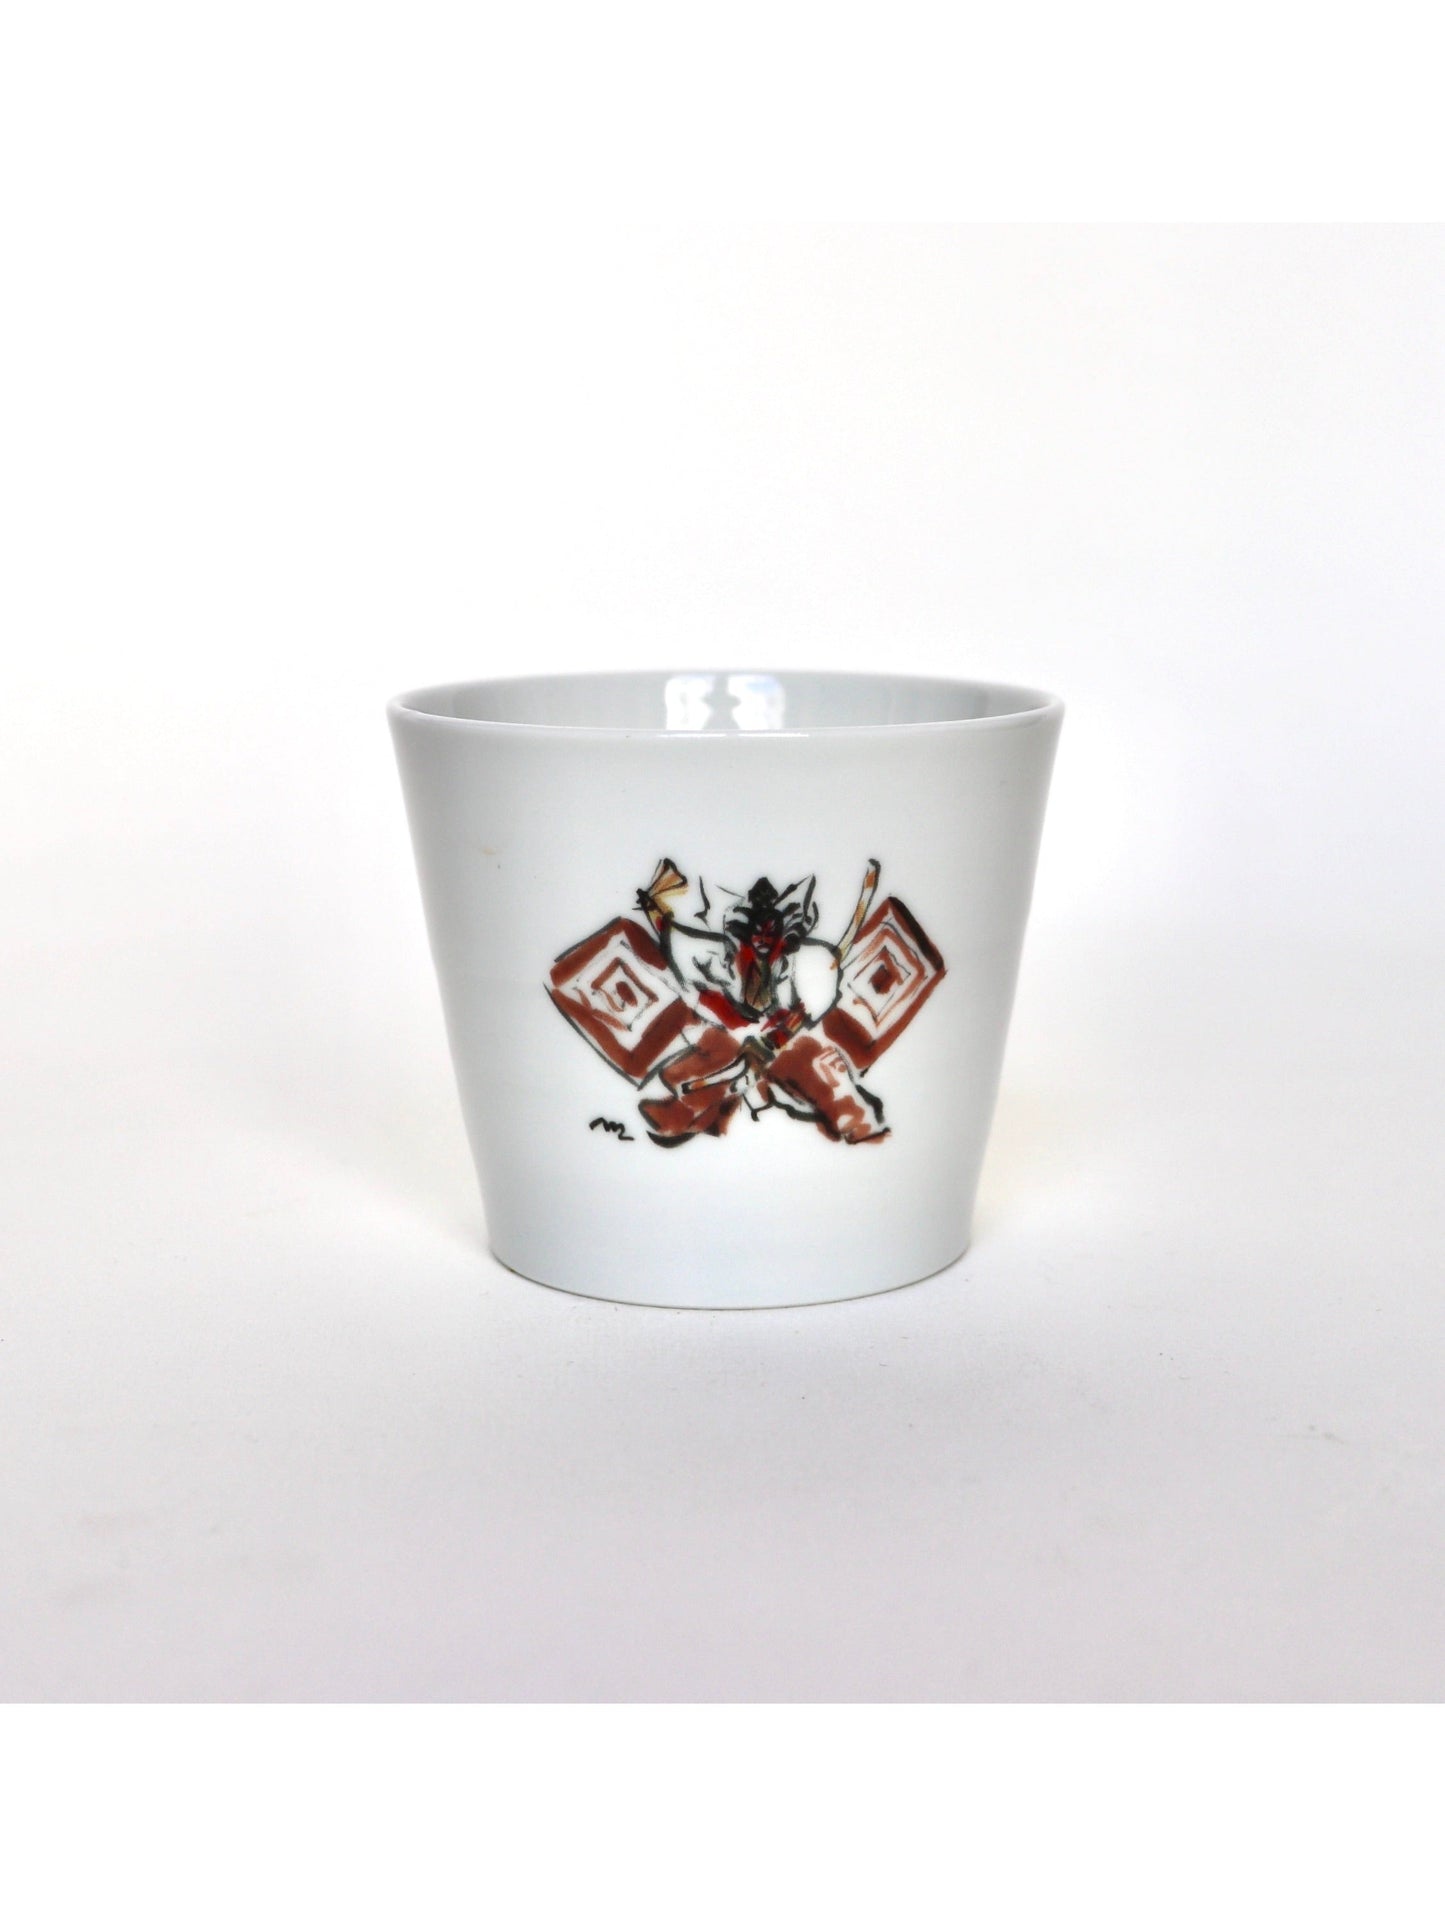 Porcelain cup / "Kabuki" Jugetsu